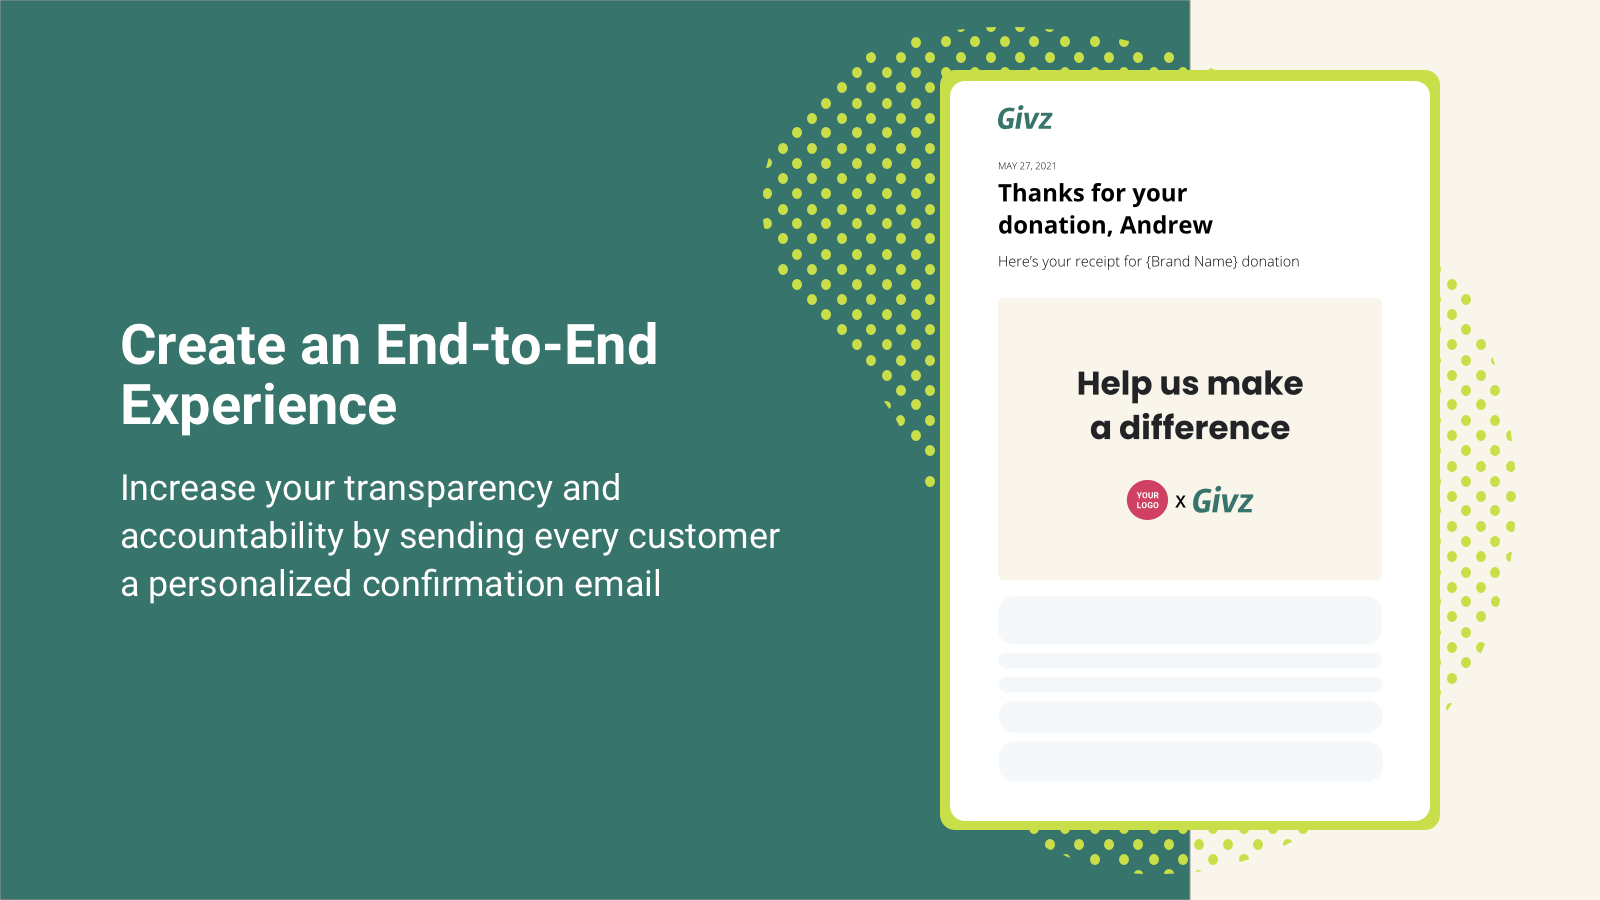 Krijg meer vertrouwen door het sturen van een e-mail ontvangstbewijs van donaties naar shoppers